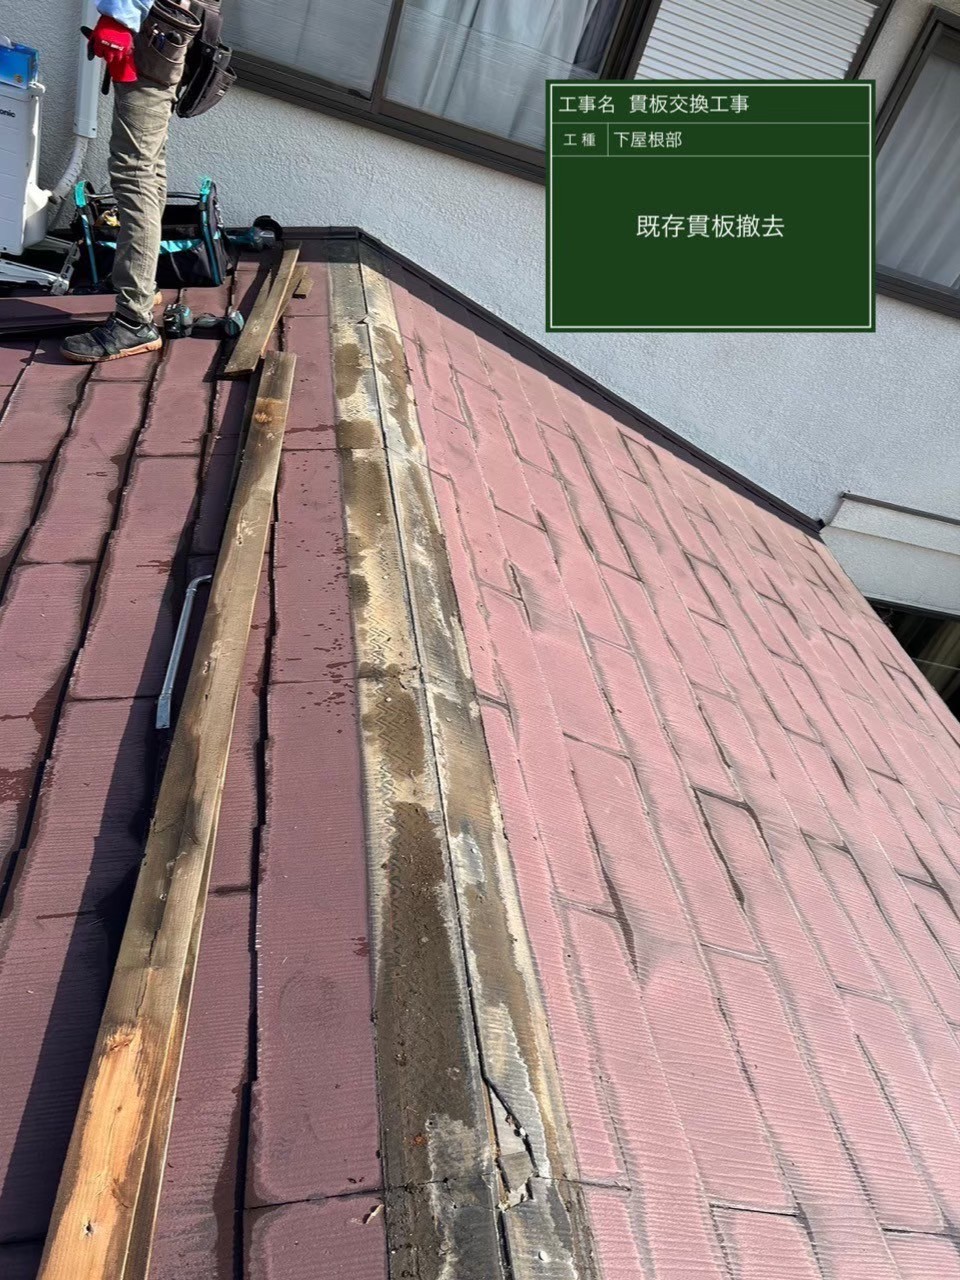 印旛郡にて屋根修理〈貫板の交換工事〉の施工前写真